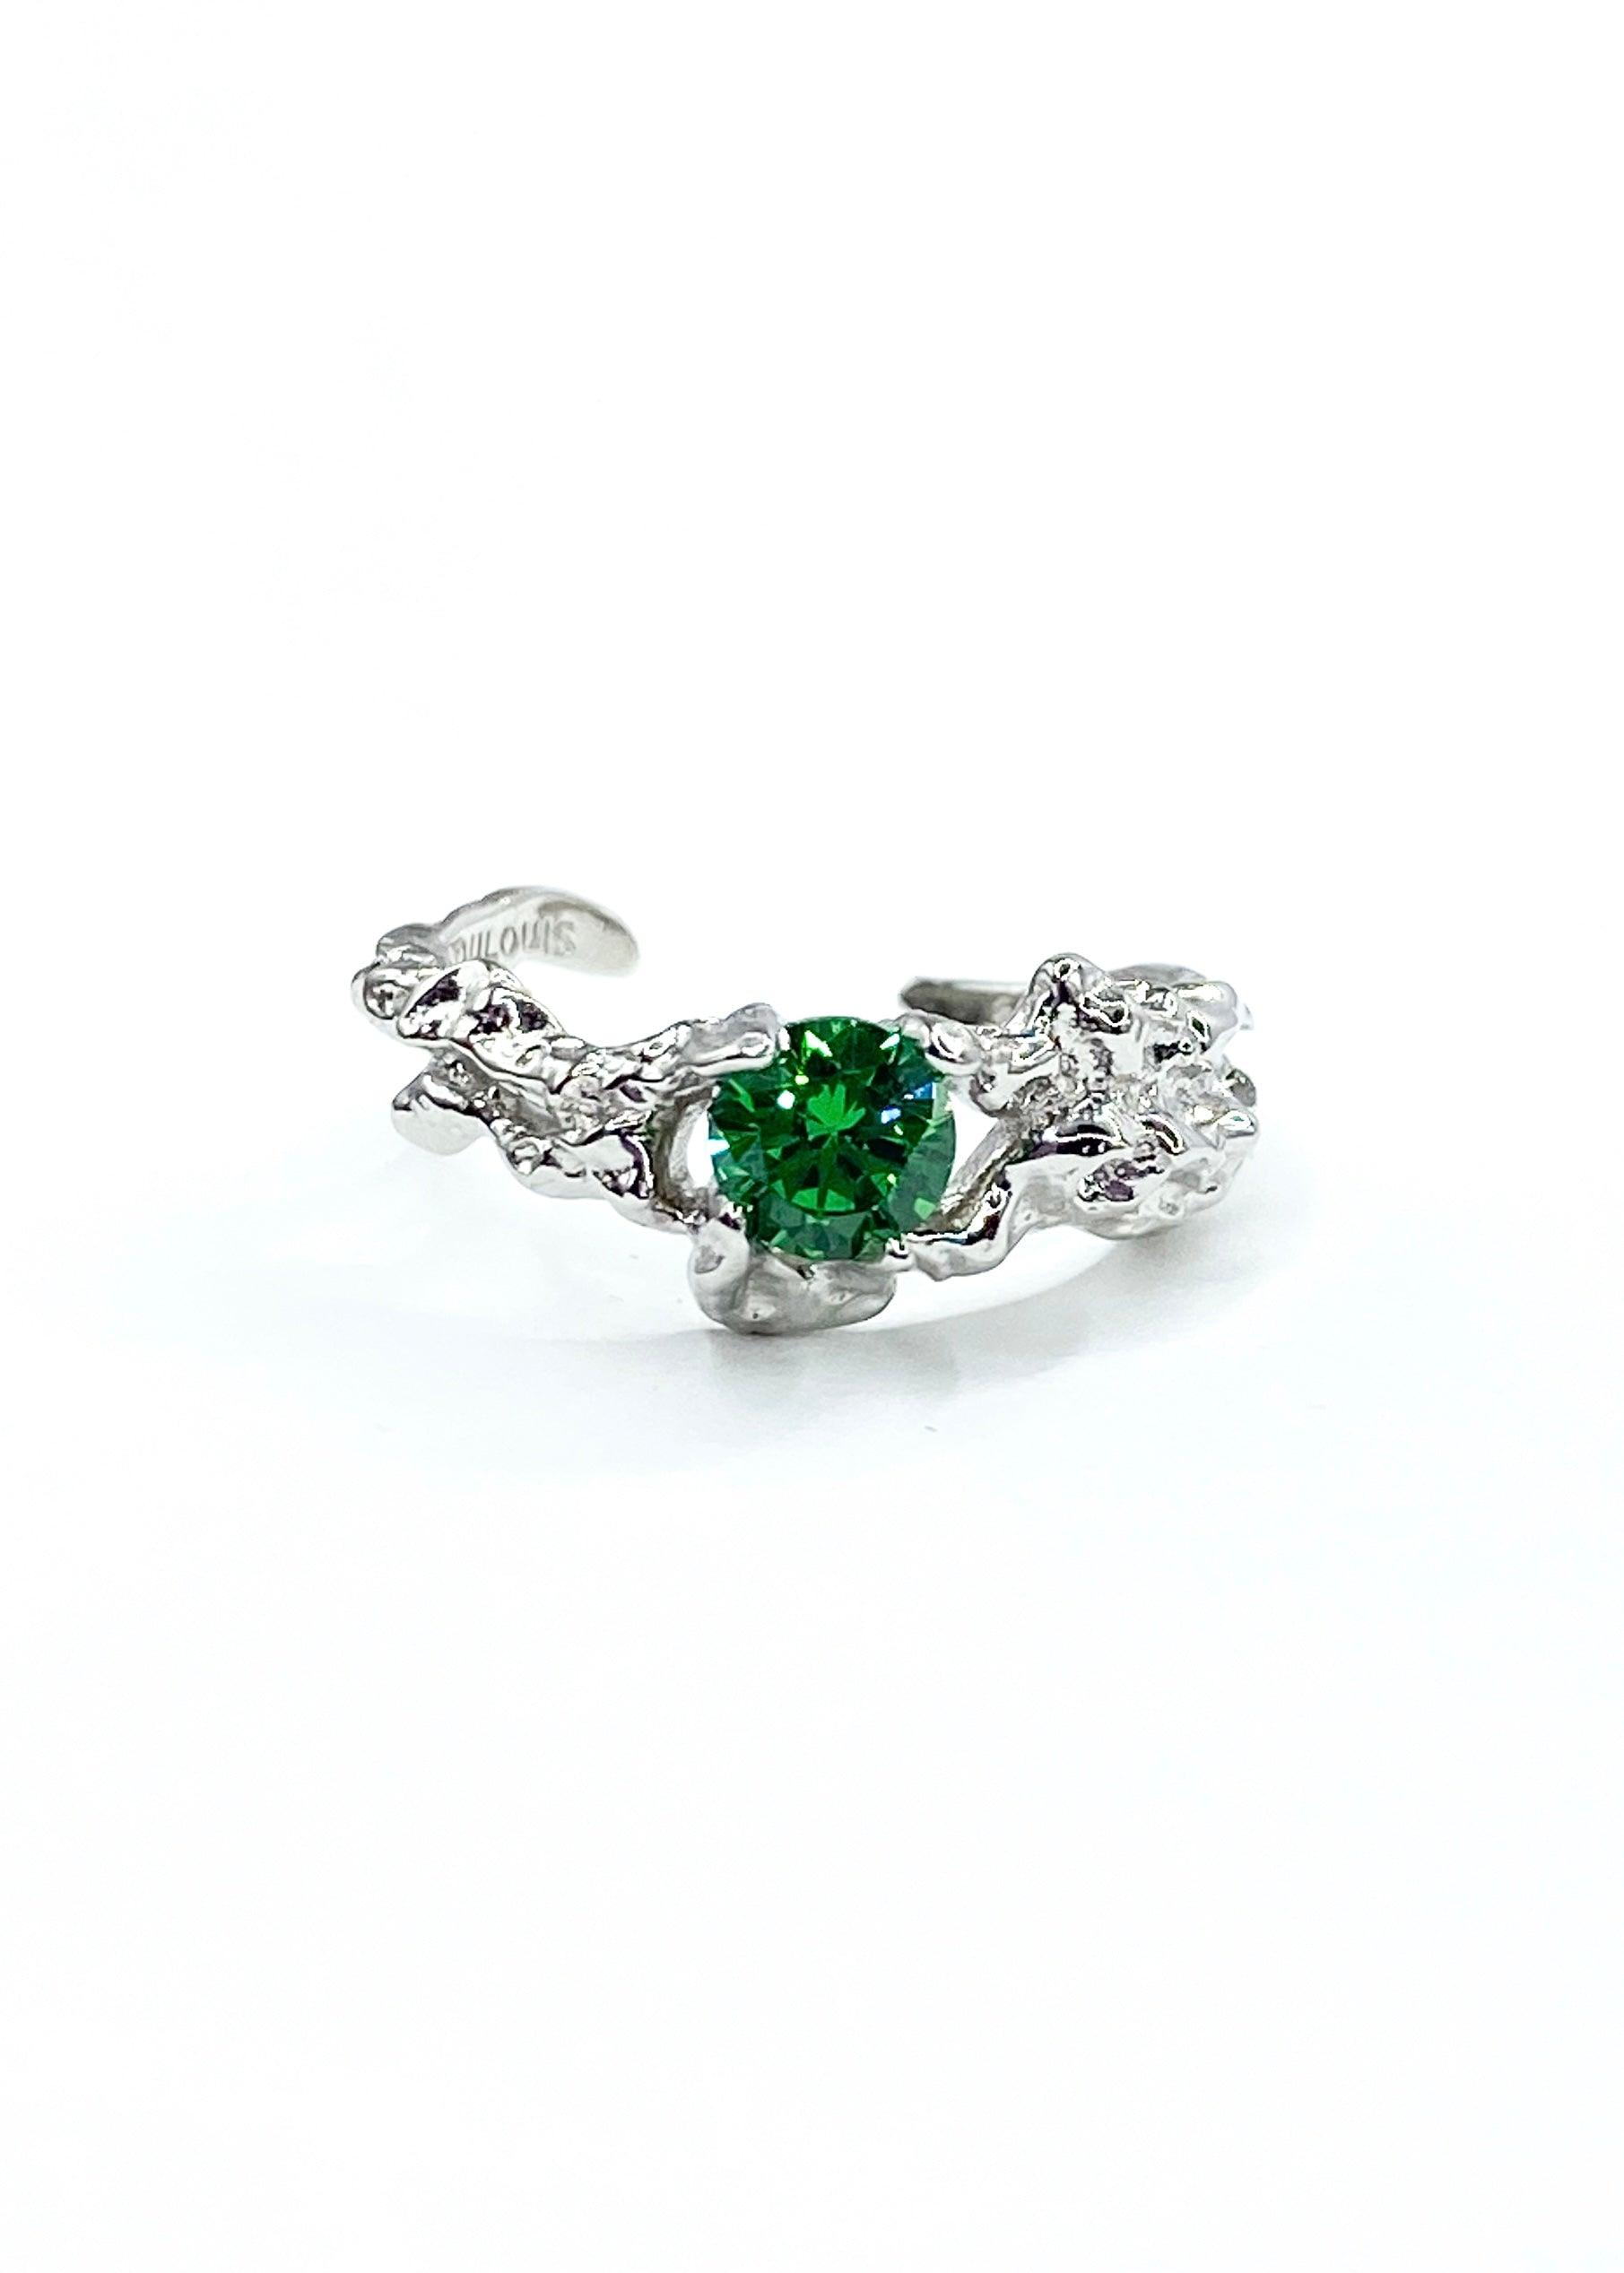 Vakker sølvring med smaragd grønn sten på en elegant hvit bakgrunn.